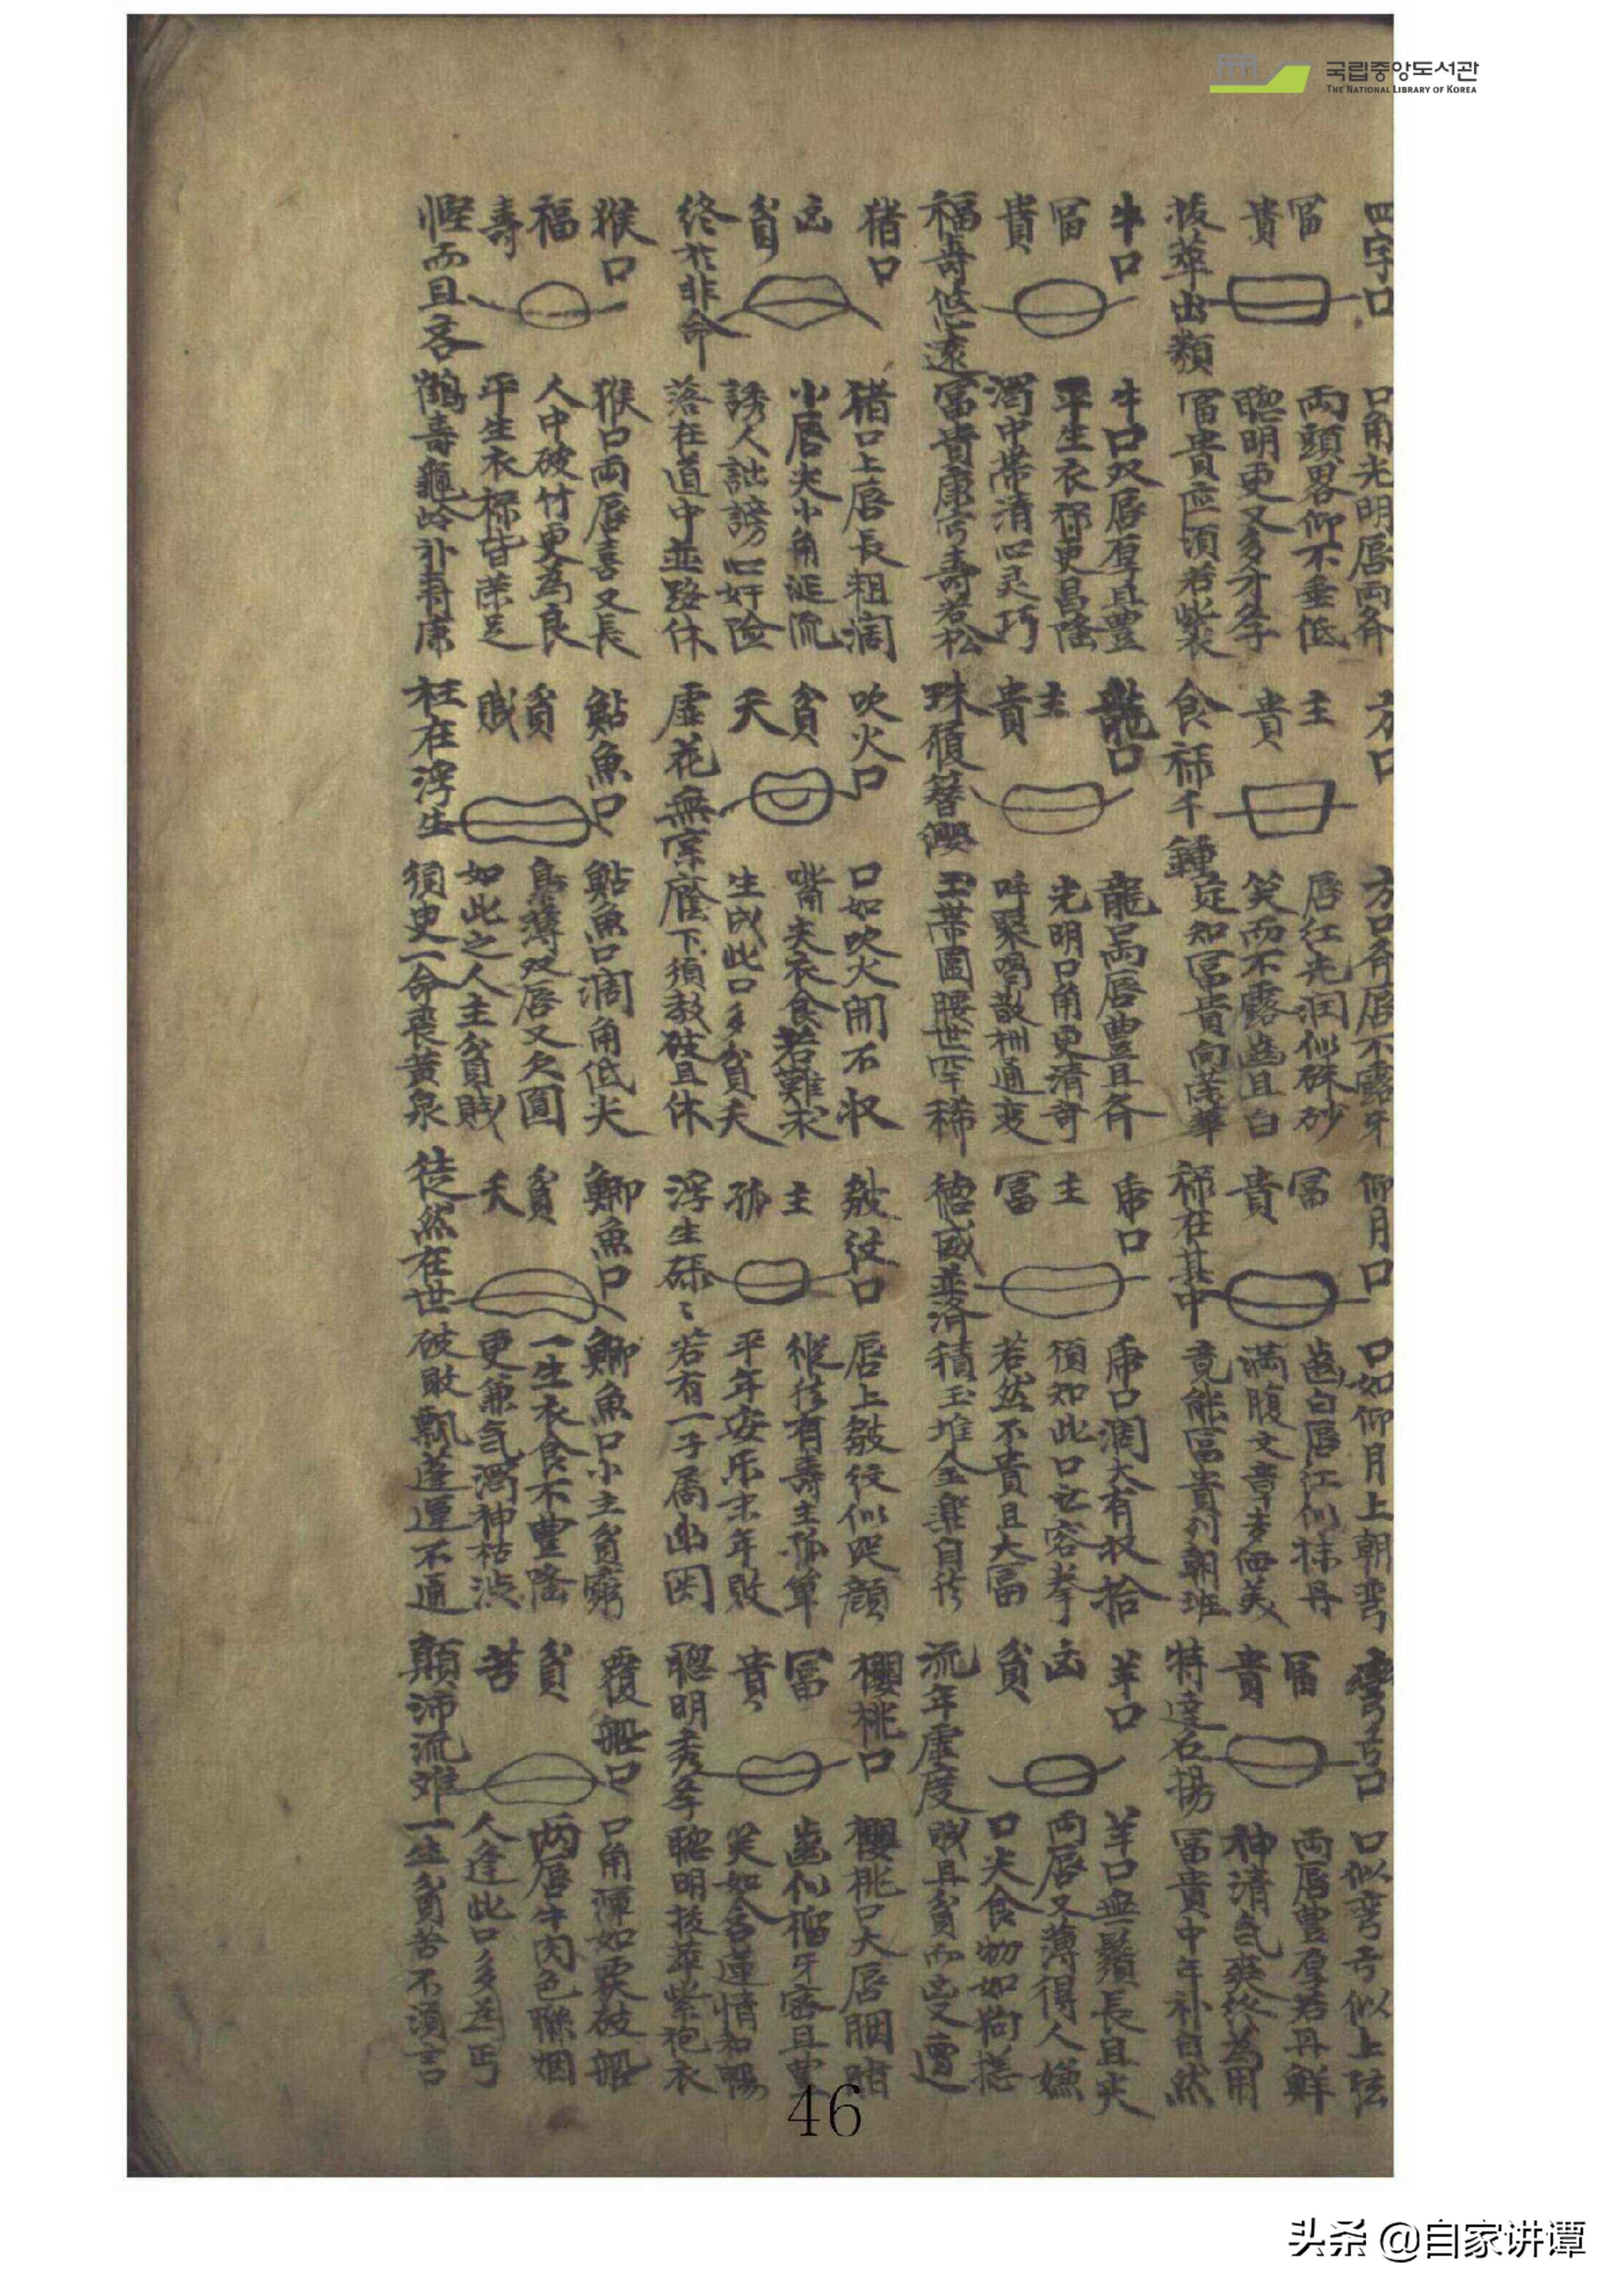 相书类古籍抄本，《麻衣经》，大约成书于宋元时期